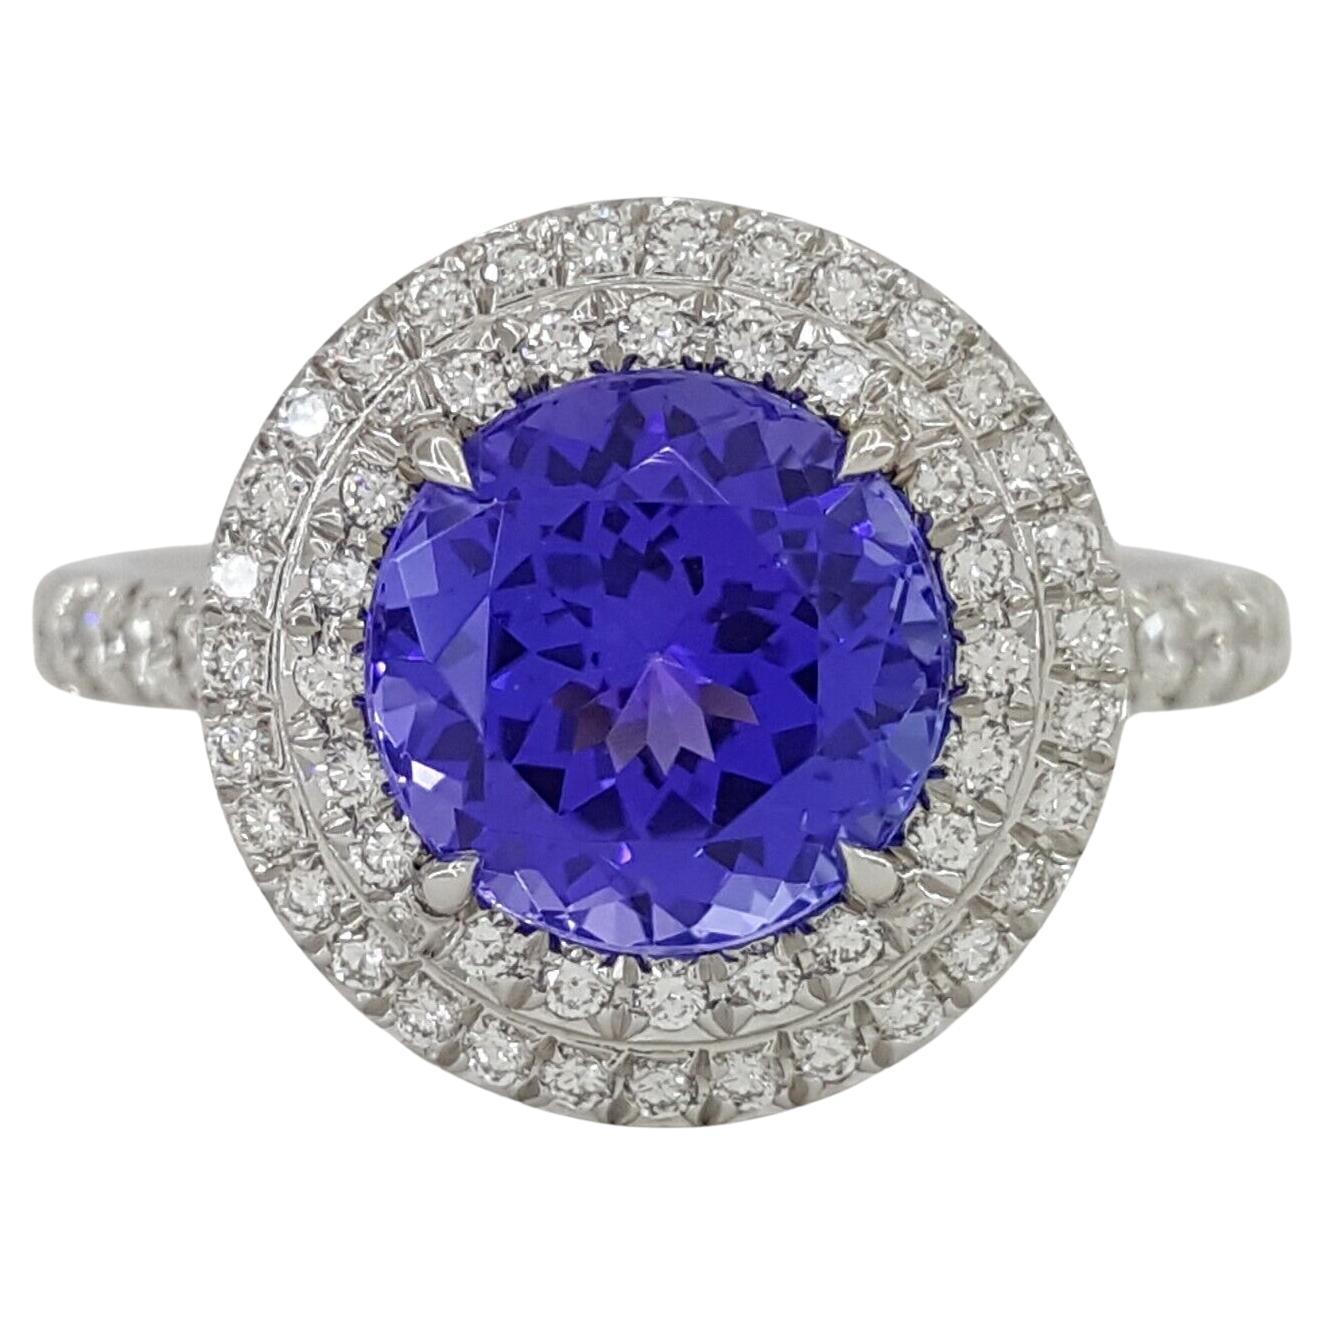 Tiffany & Co. Platinum Soleste 2.63 Carat Excellent Cut Diamond Ring